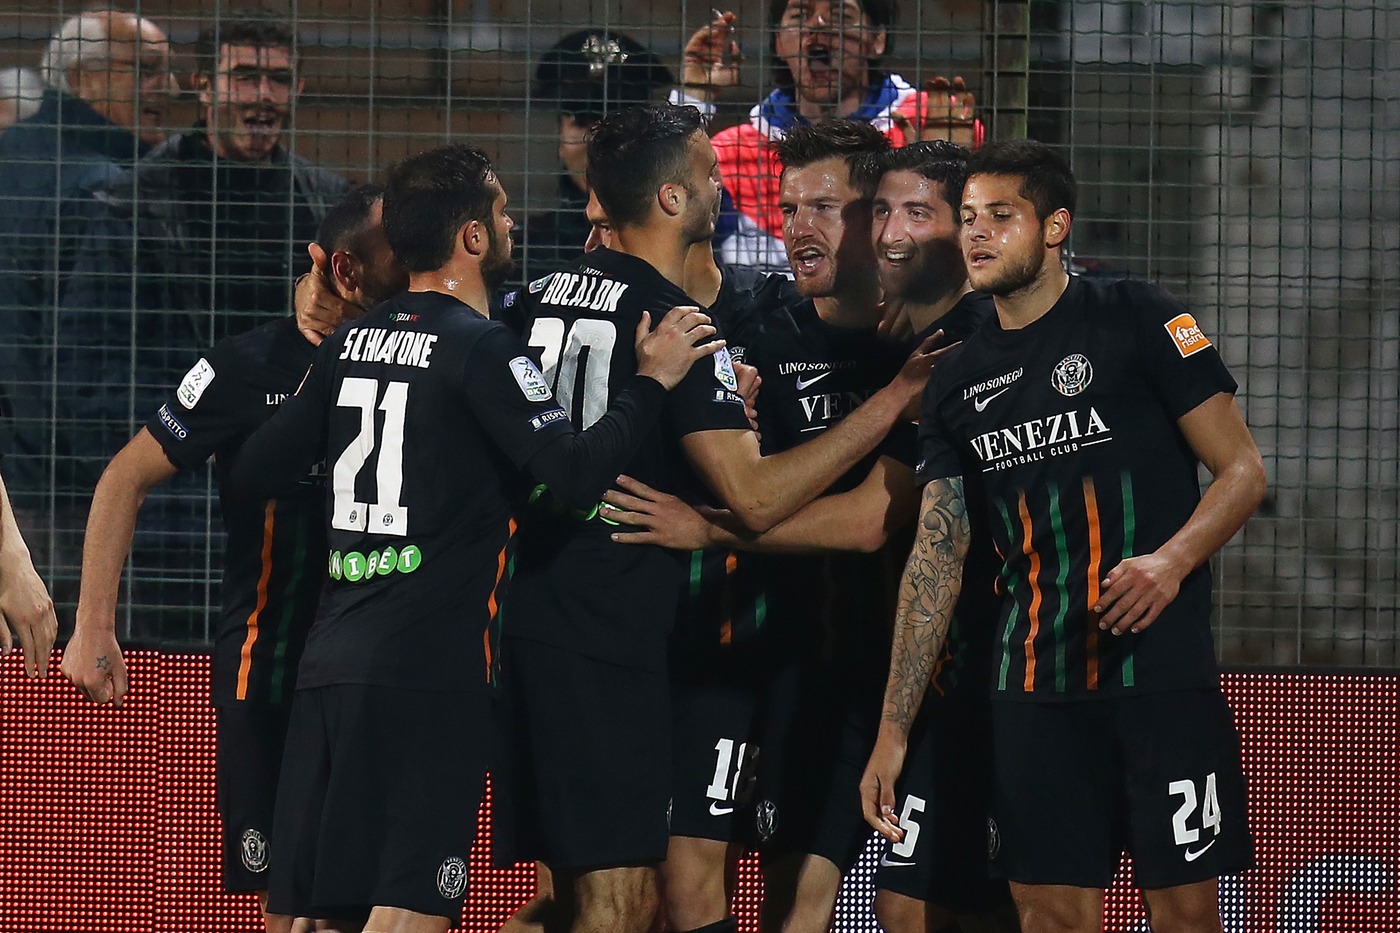 Carpi-Venezia 11 maggio: match dell'ultima giornata del campionato di Serie B. I veneti vogliono evitare la Serie C diretta.